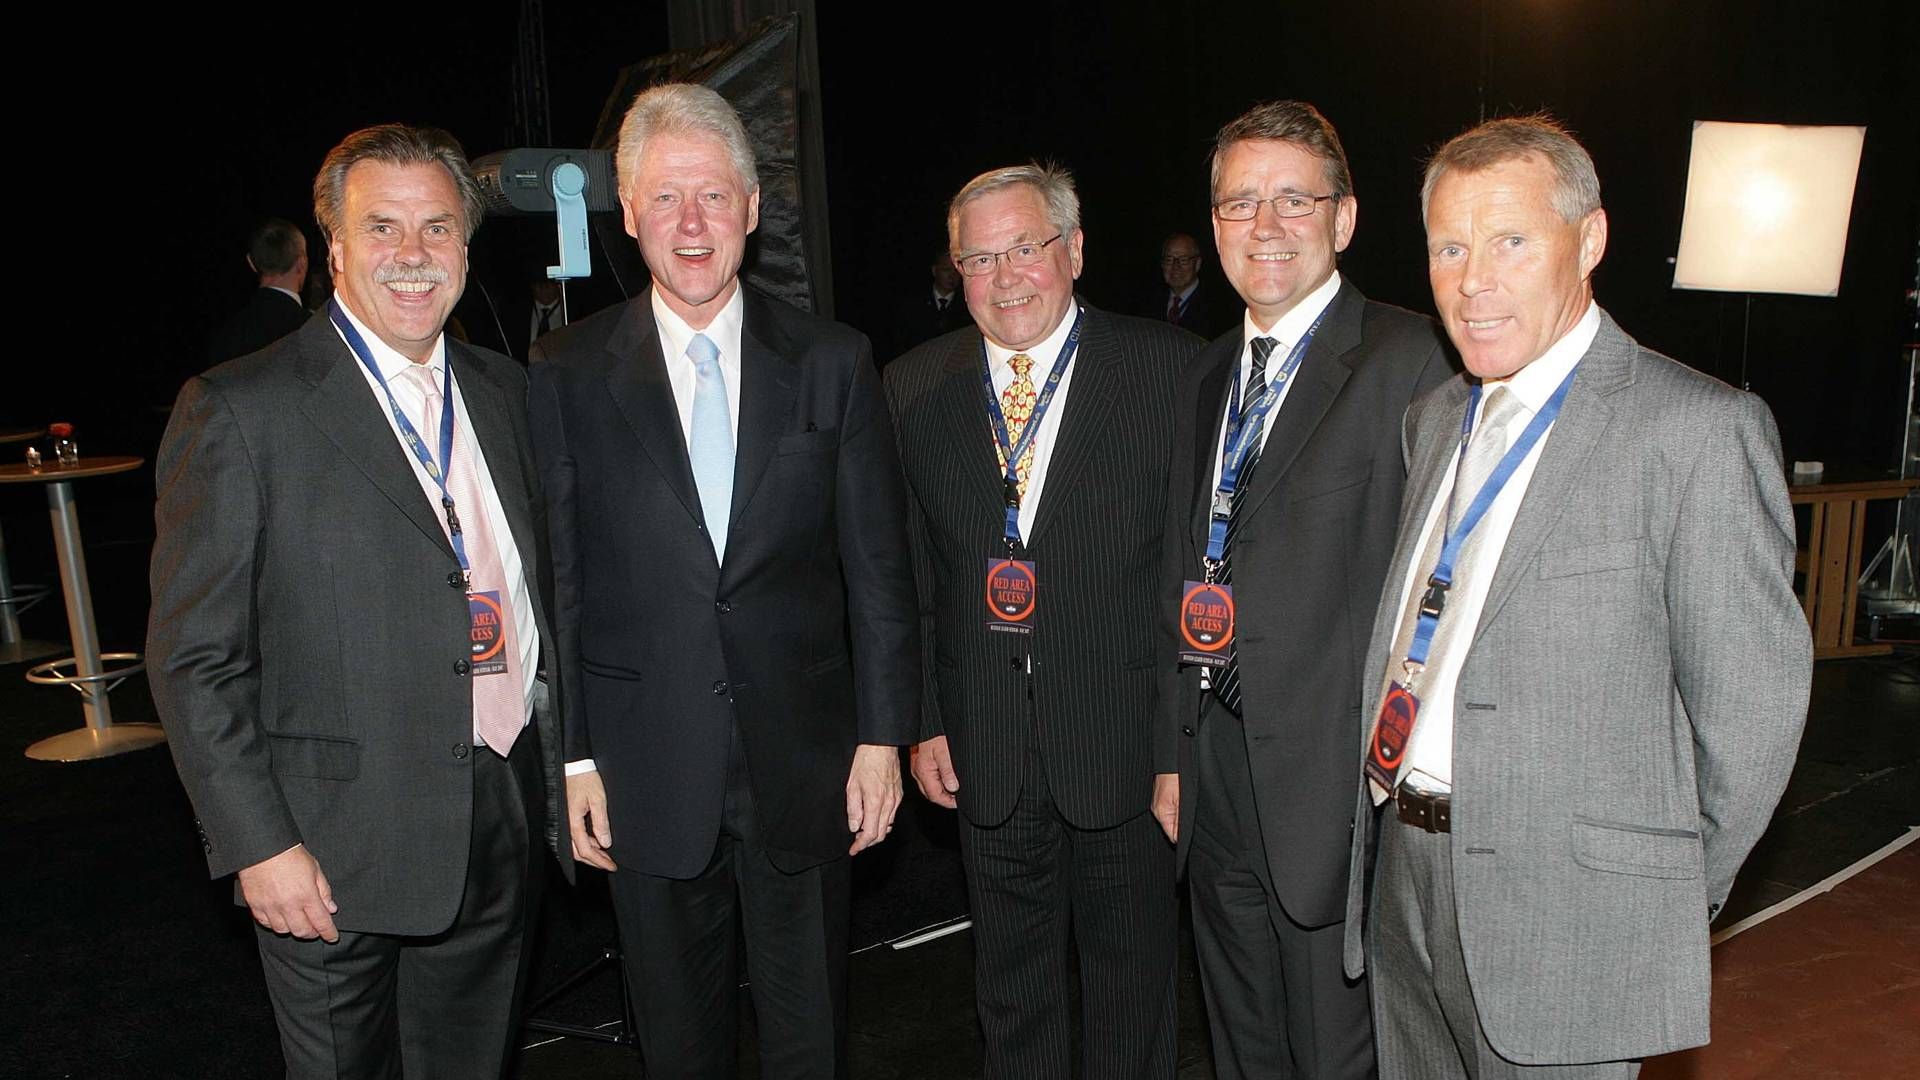 Tromsø-trioen (fra høyre) Ernst Myrbakk, Tormod Harila og Per Krane var i mange år forretningspartnere. I 2007 fikk de Bill Clinton, tidligere president i USA, til byen. Onni Nordström (t.v.) har ingen befatning med saken. | Foto: Yngve Olsen Sæbbe / NTB